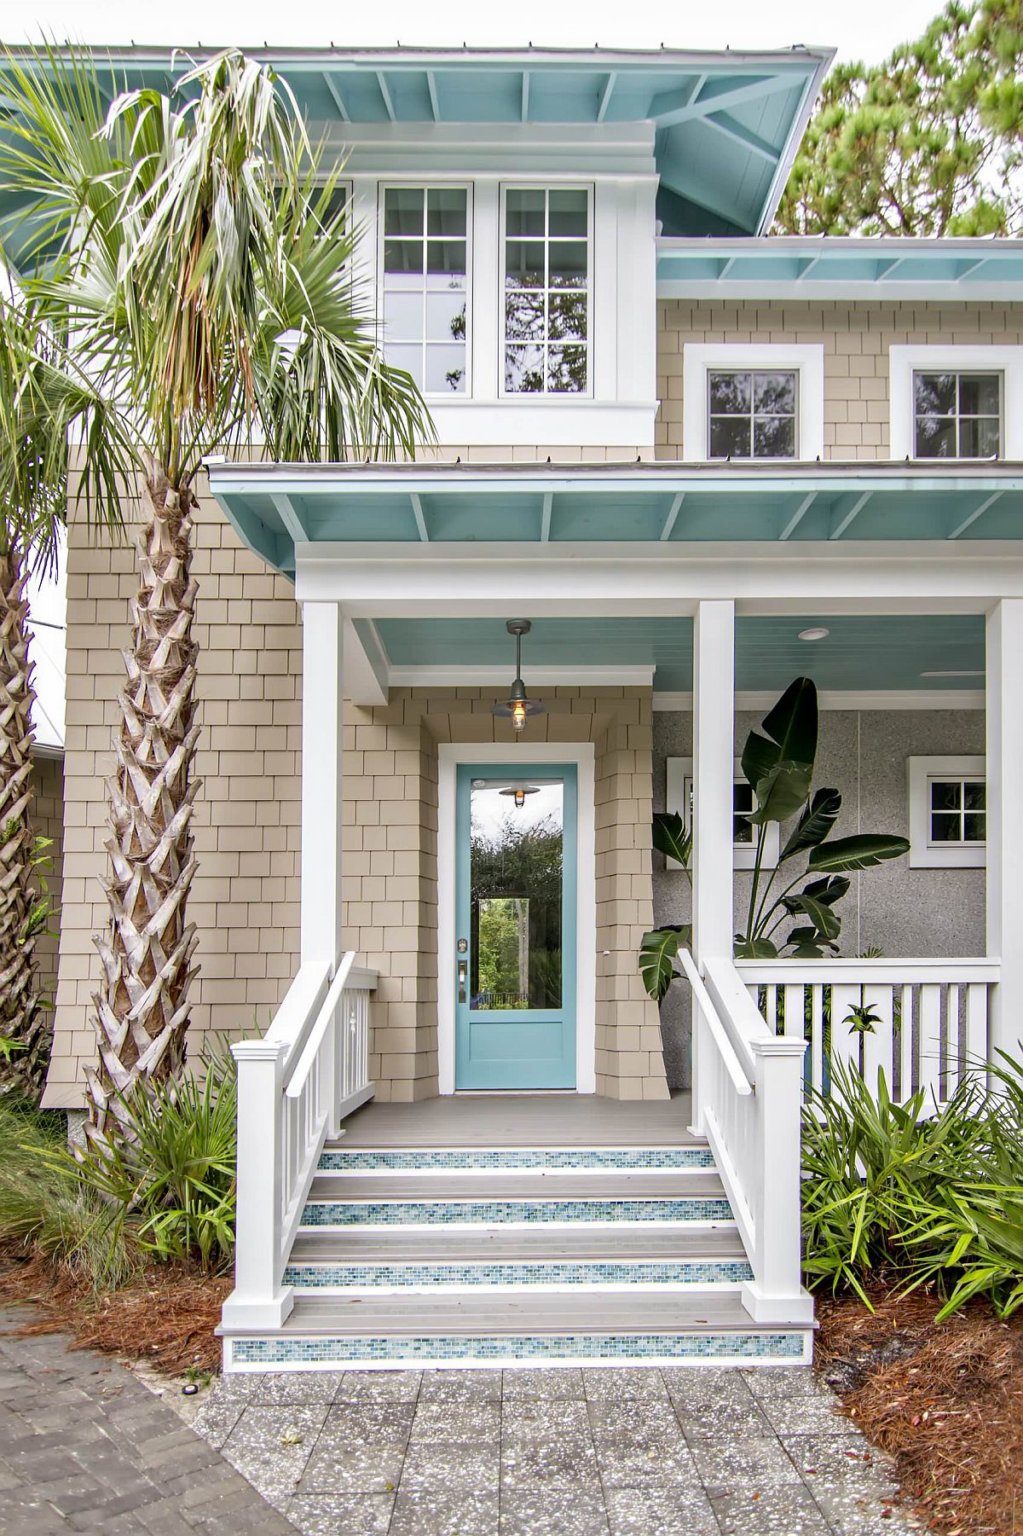 Ngoại thất sơn màu xanh lam là lựa chọn phù hợp với ngôi nhà phong cách bãi biển.